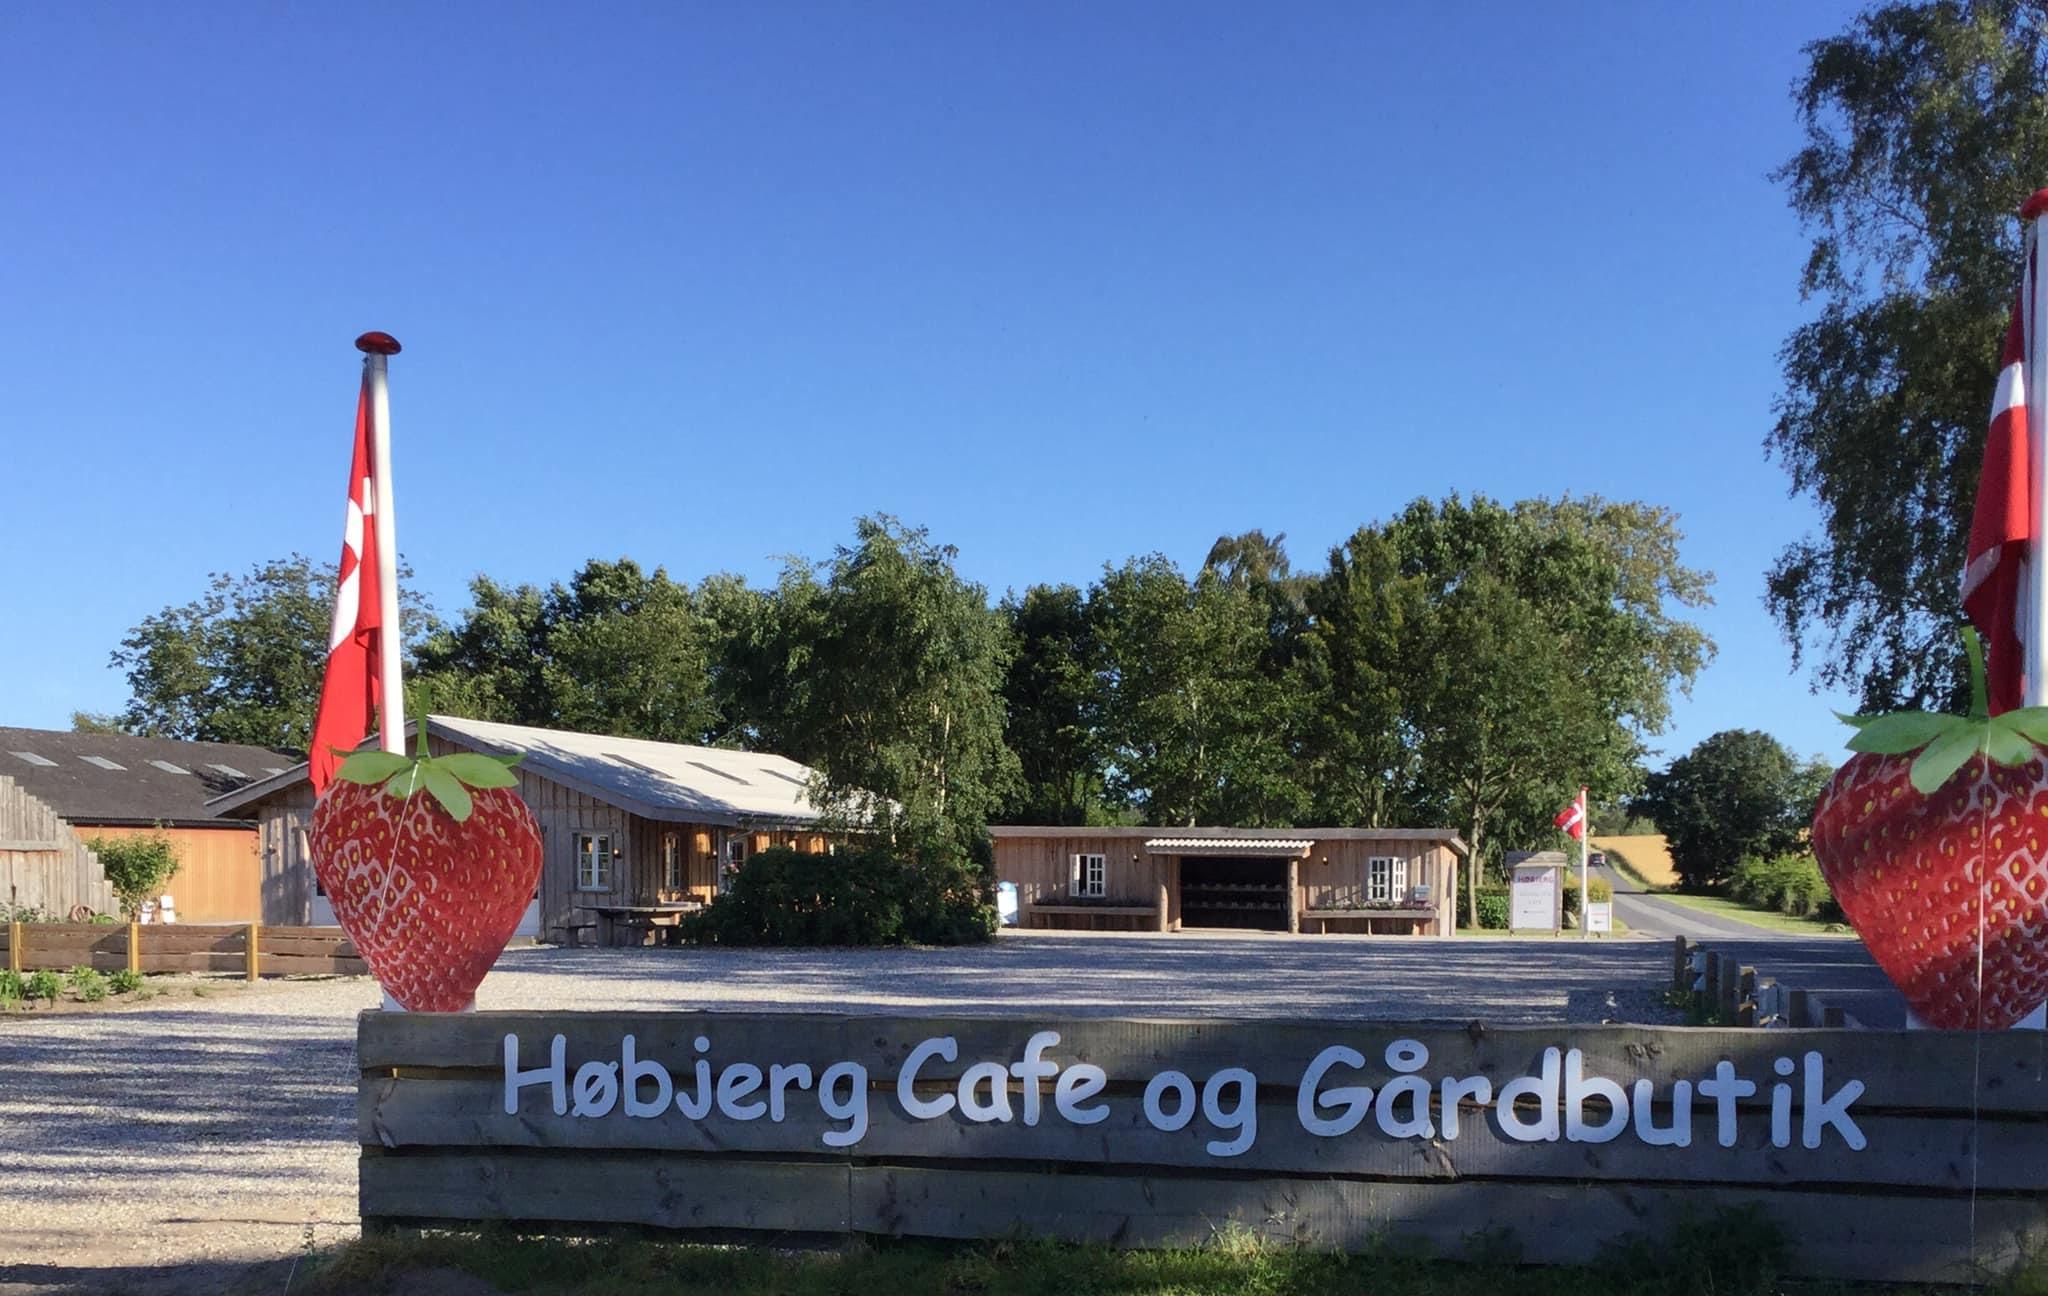 Høbjerg Cafe og Gårdbutik, Grenå, Denmark